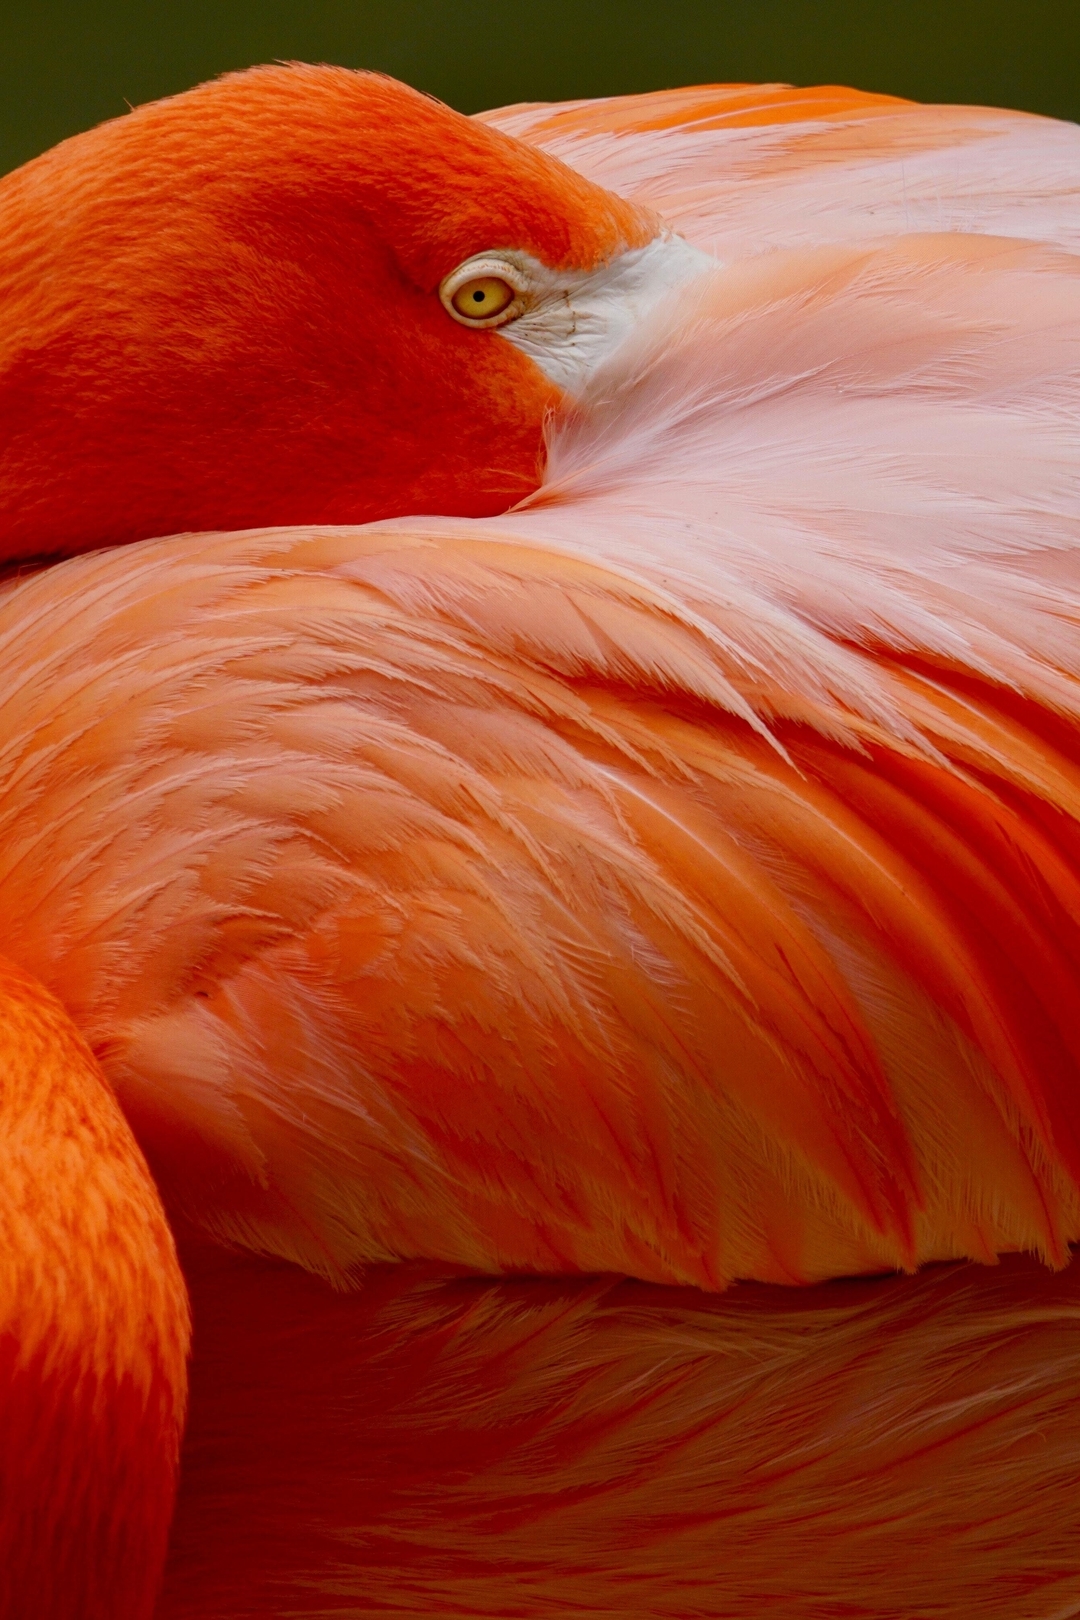 Картинка: Птица, красный фламинго, яркий окрас